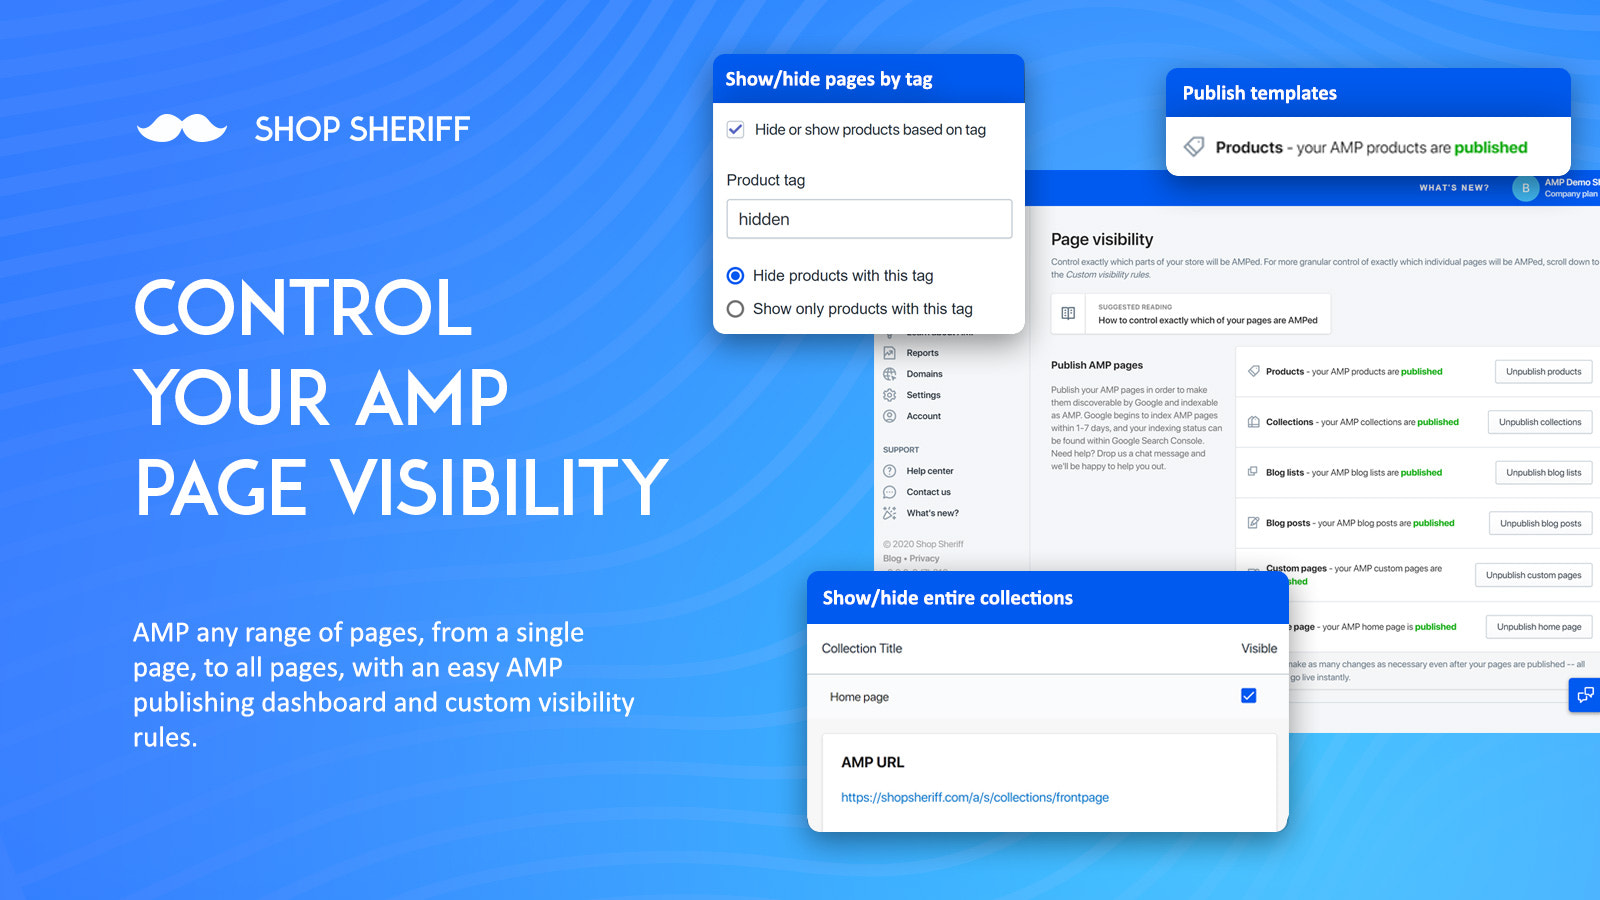 AMP Controleer pagina zichtbaarheid, verberg/toon producten, collecties etc